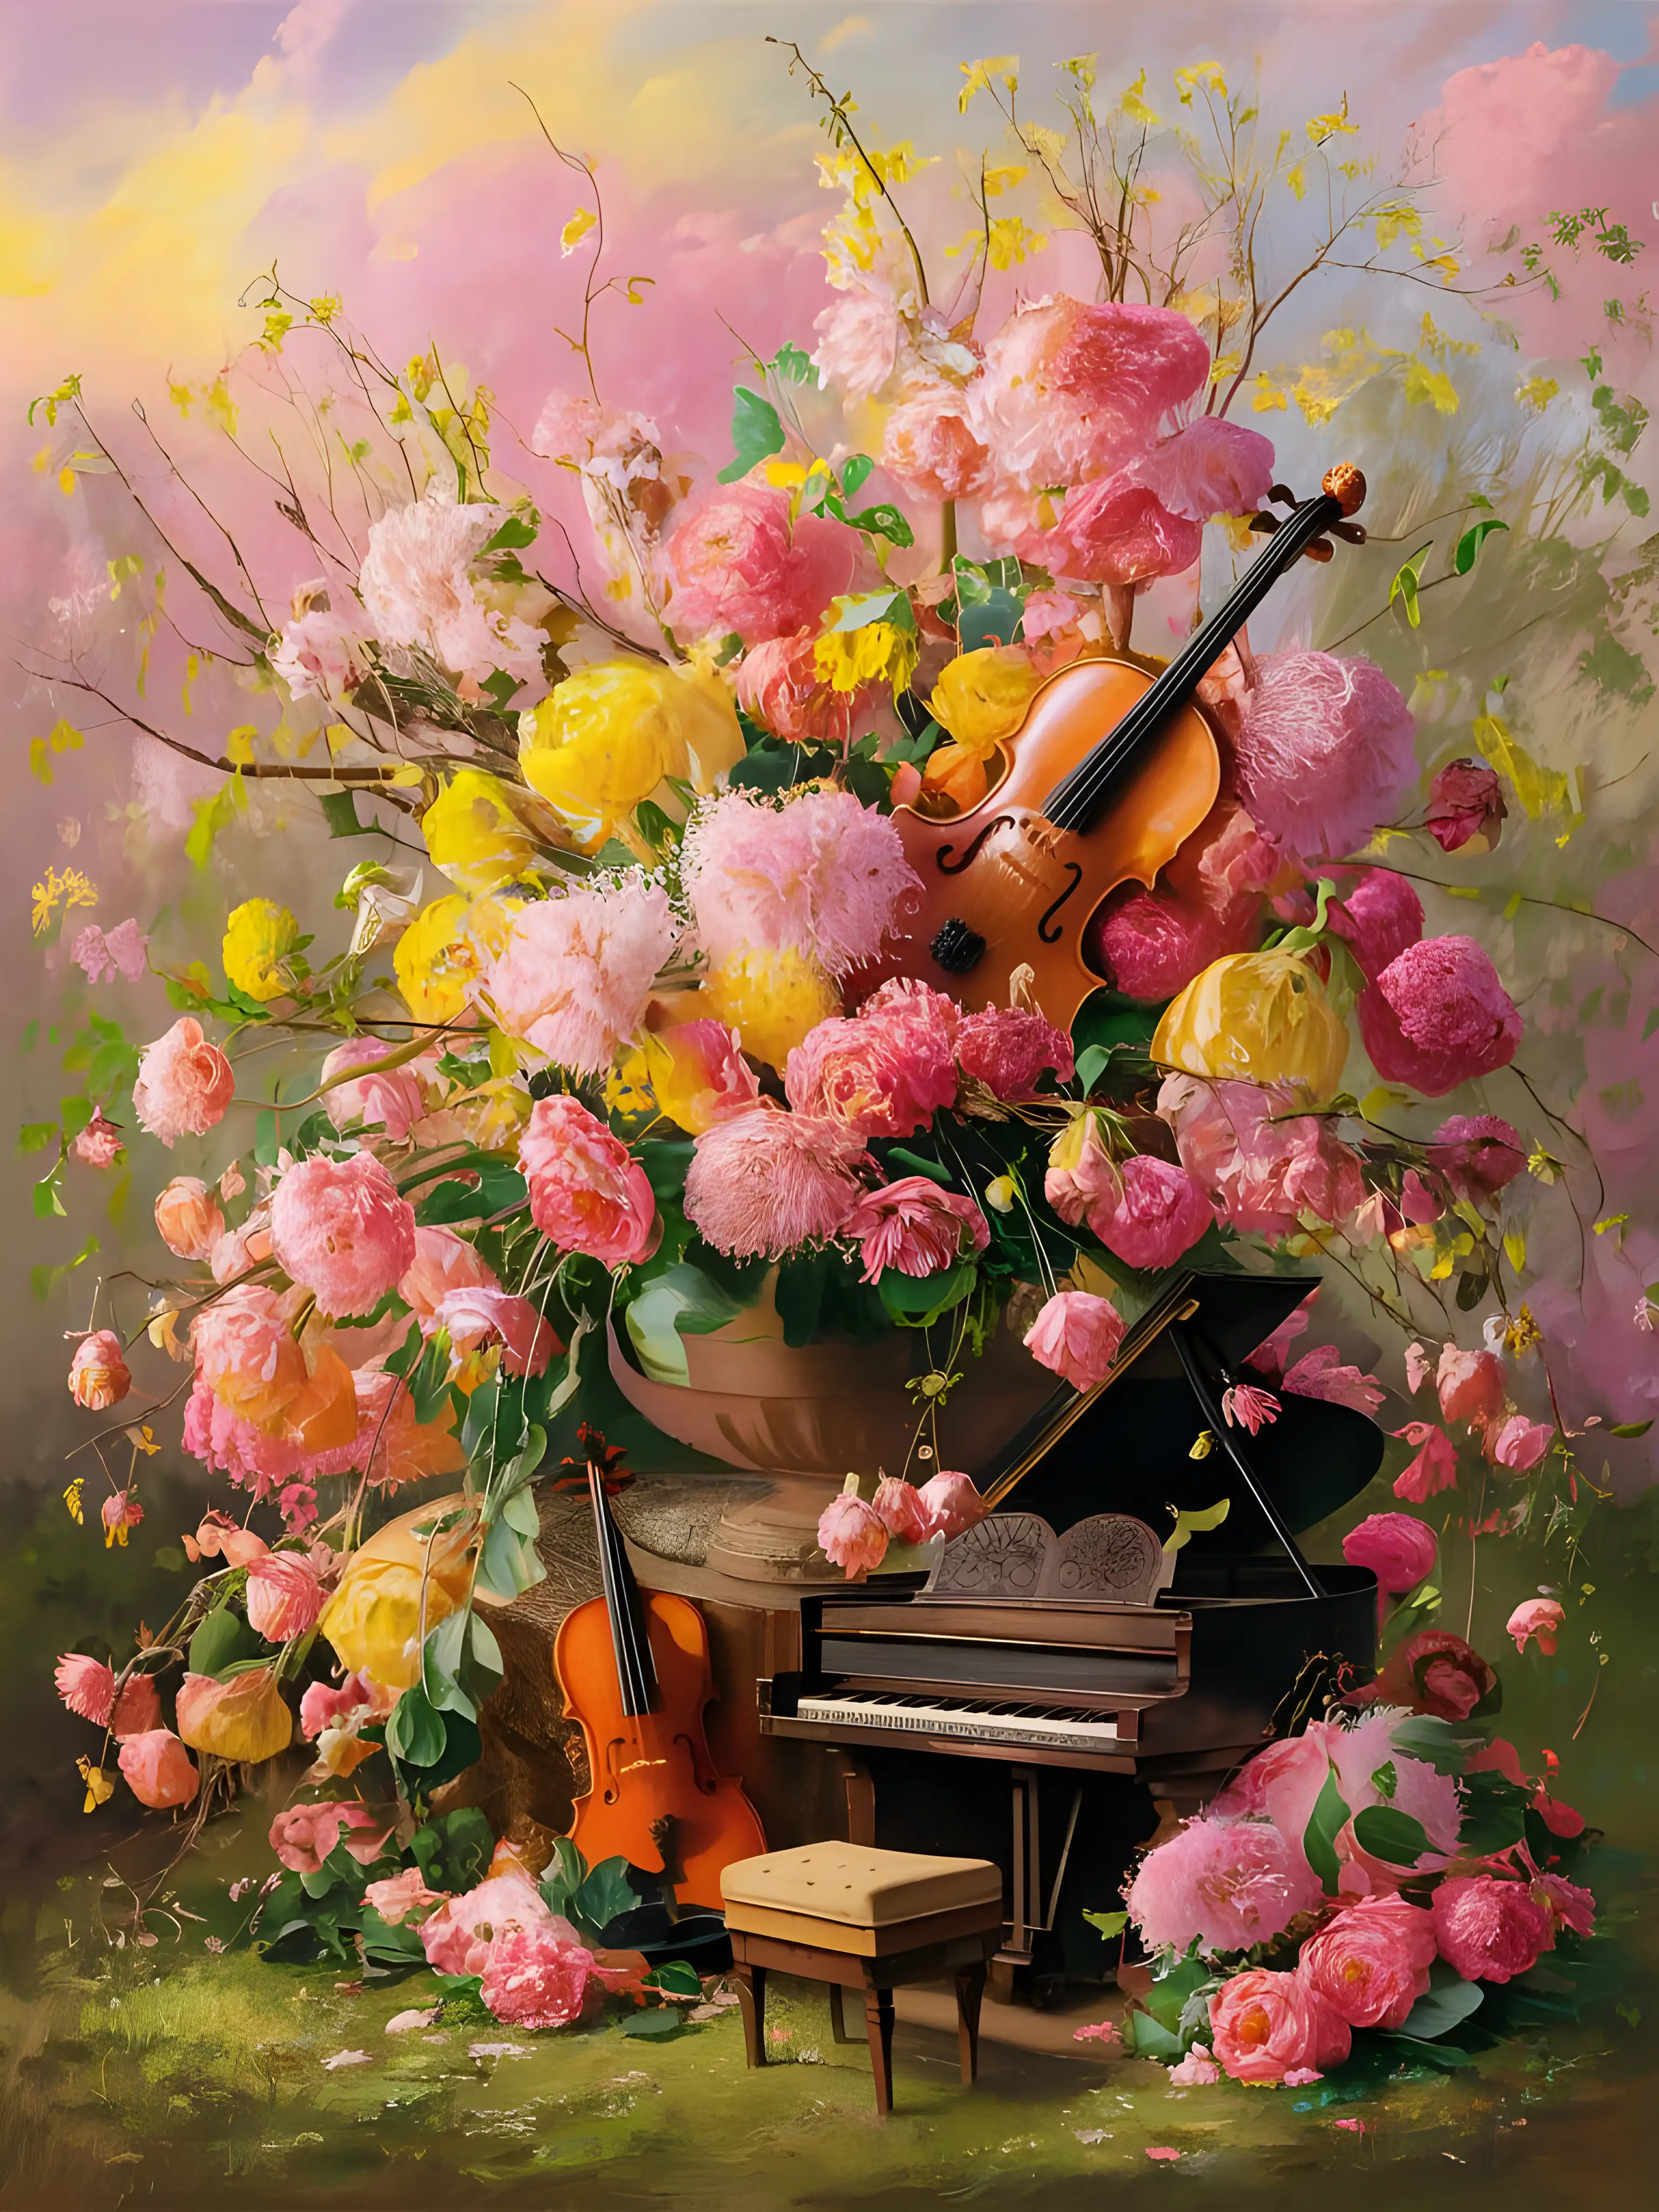 威廉・莫里斯畫風,畫花,小提琴,鋼琴,在粉色,黃色春天背景前,呈現夢幻感覺